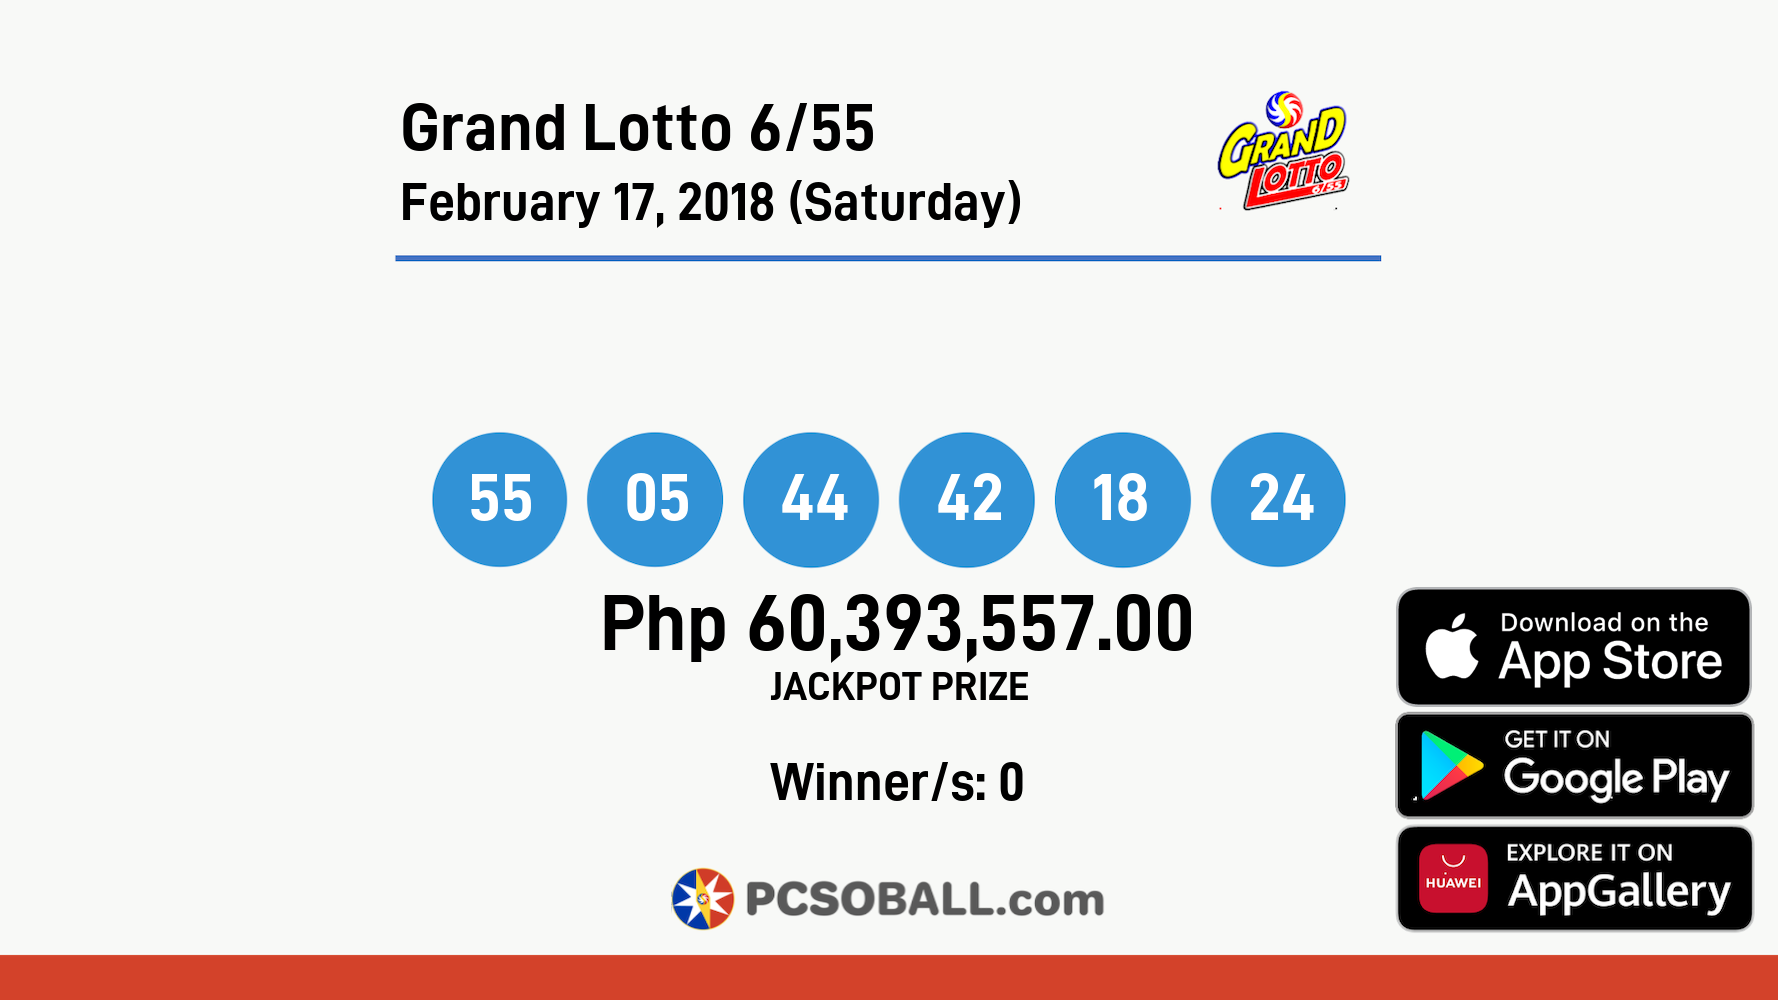 Grand Lotto 6/55 February 17, 2018 (Saturday) Result